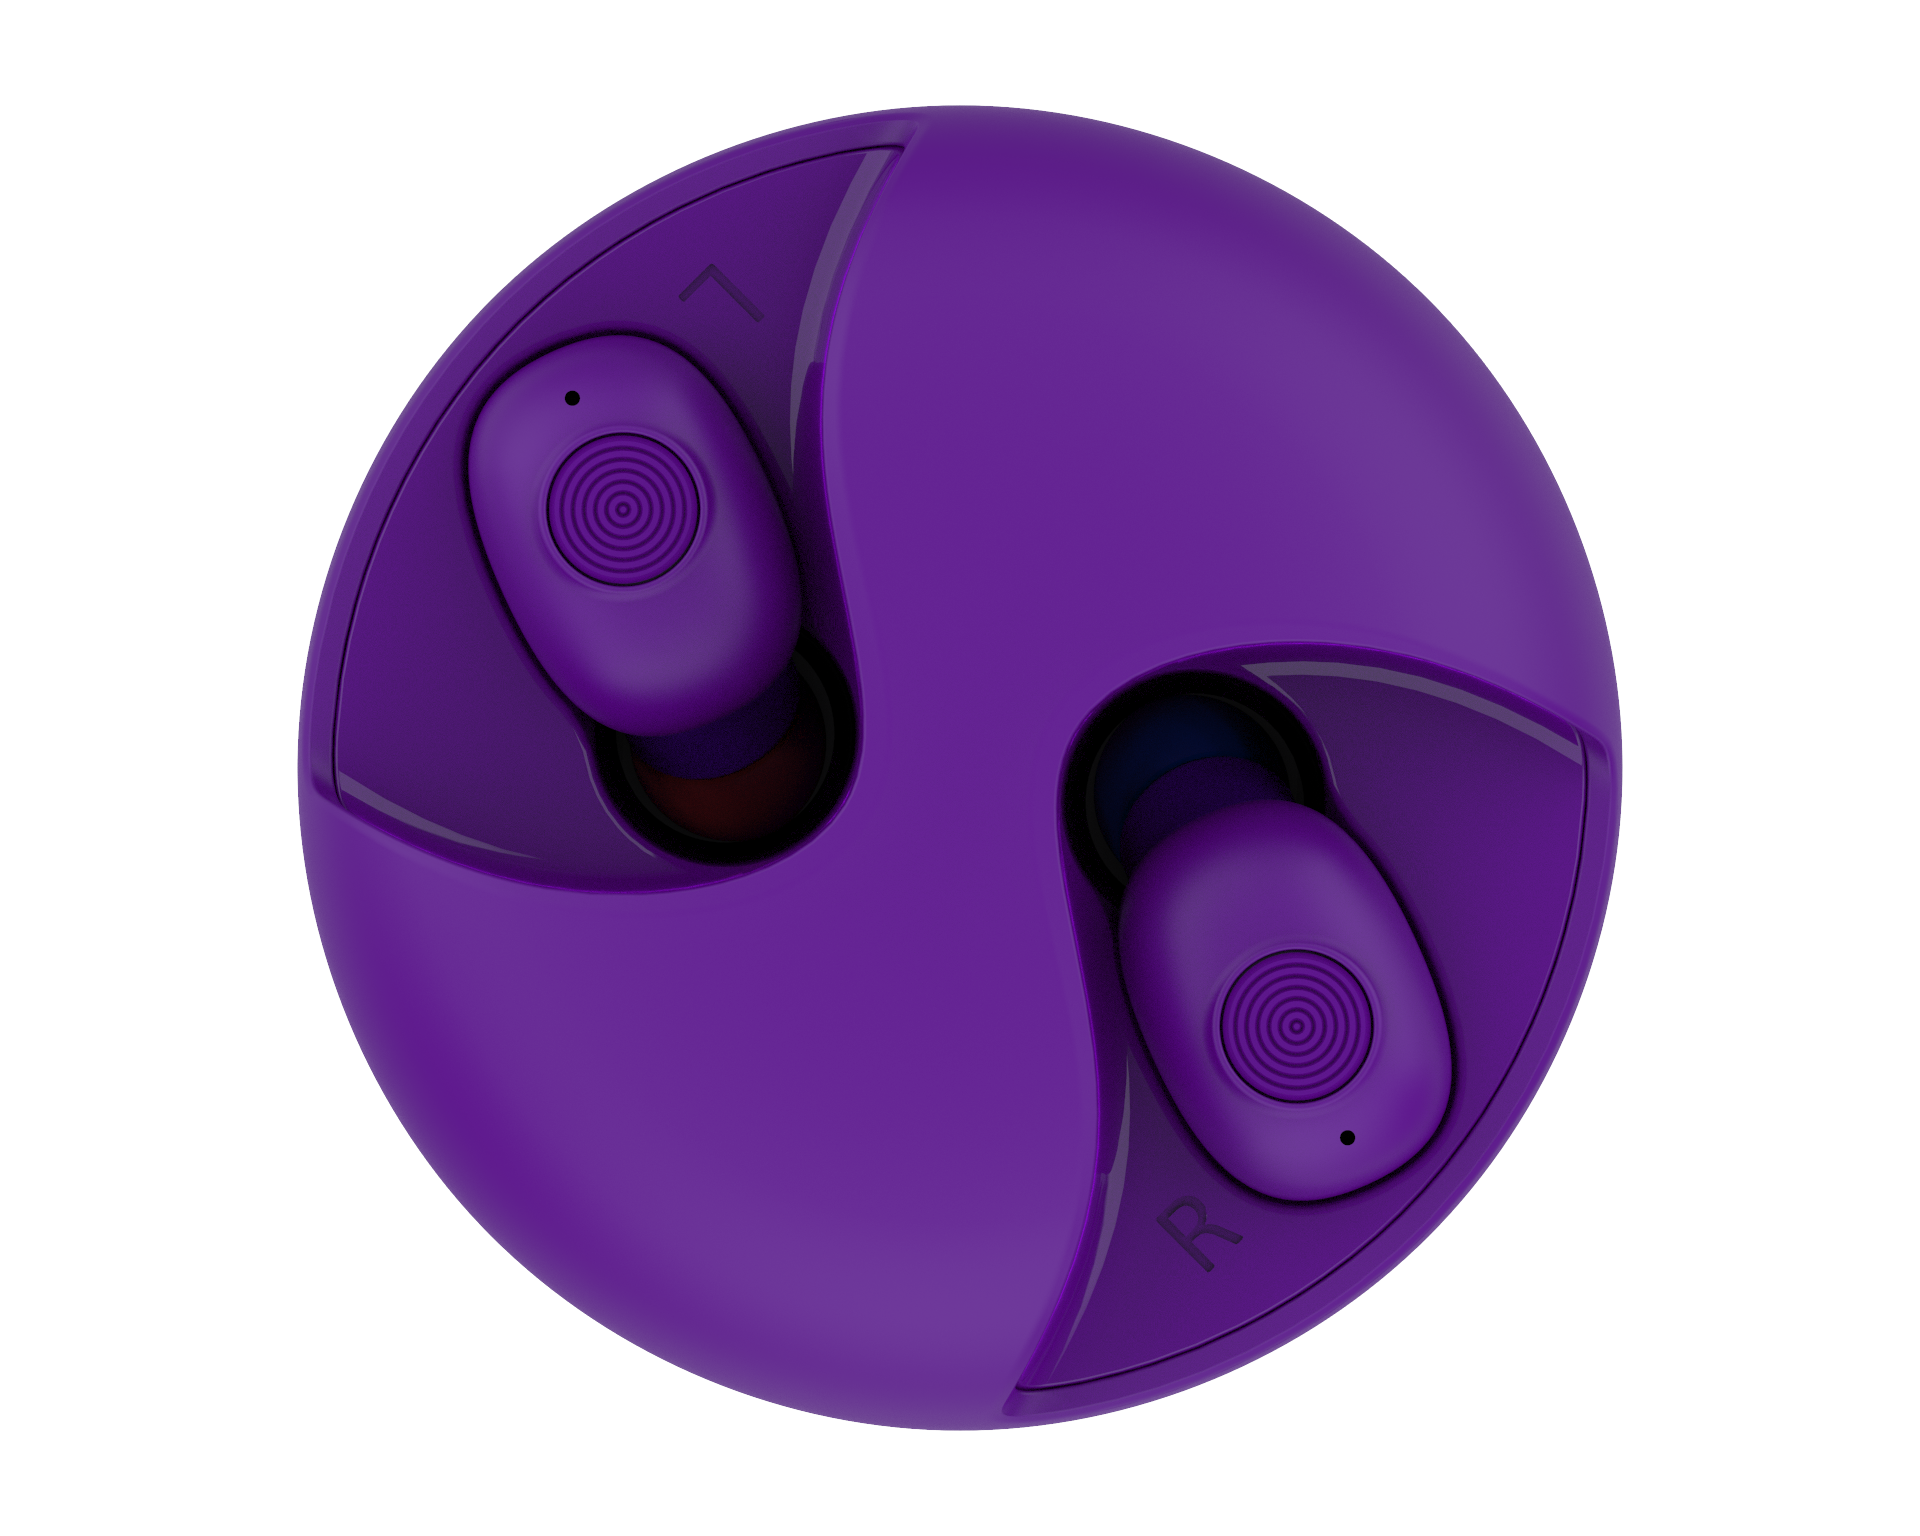 ISAAC 粉餅真無線藍芽耳機-魔幻紫